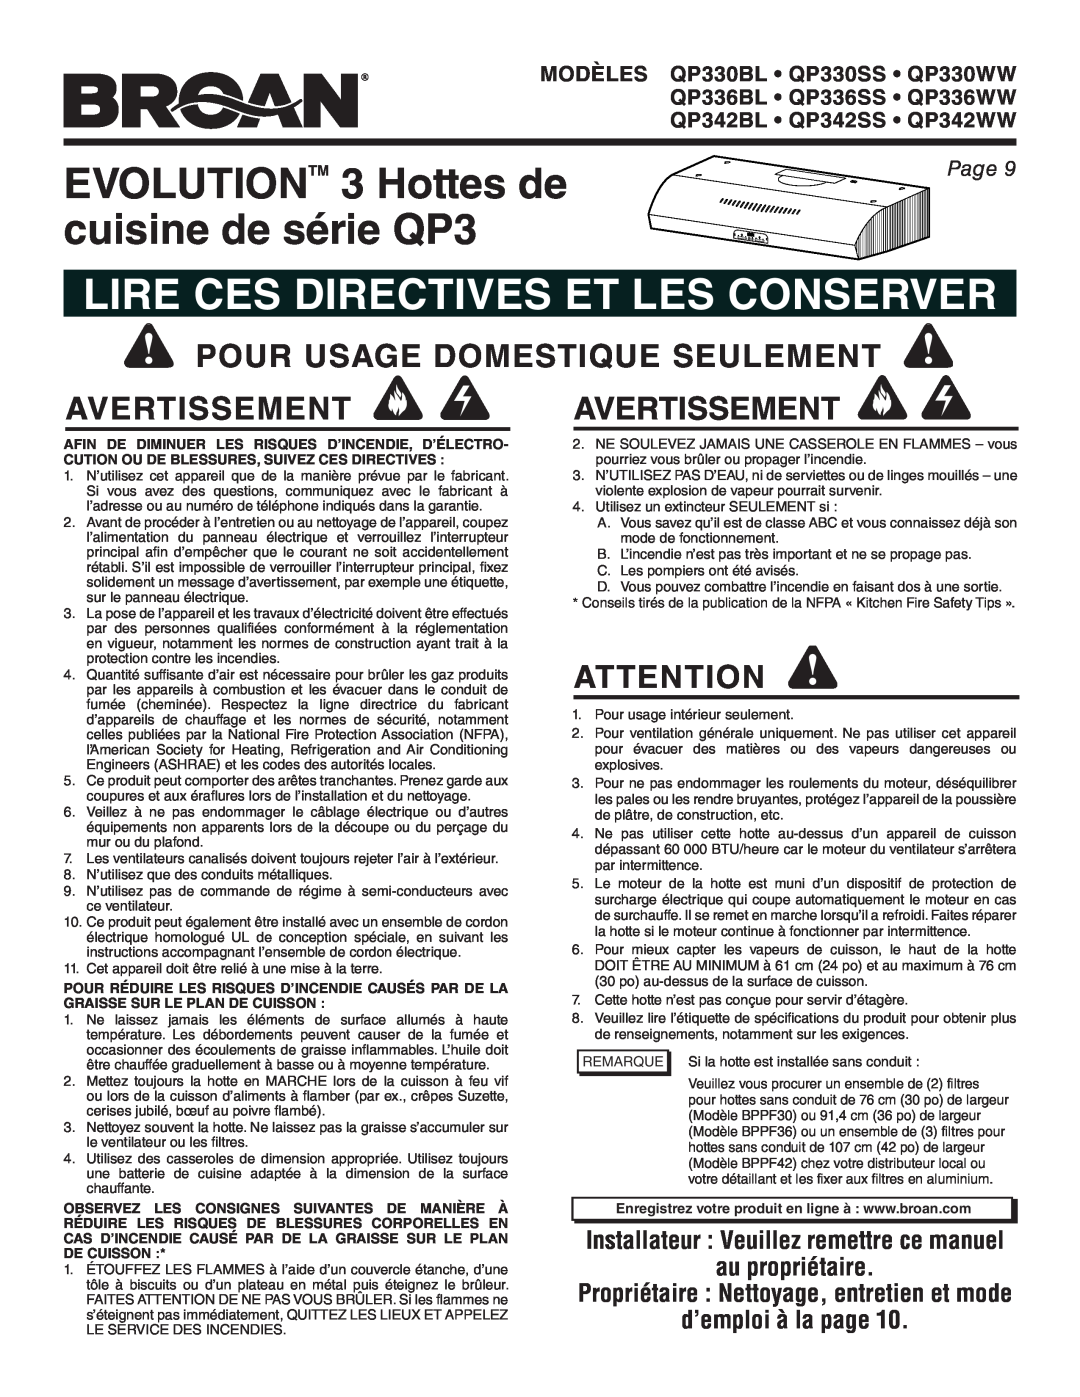 Broan QP342SS EVOLUTIONTM 3 Hottes de, cuisine de série QP3, Lire Ces Directives Et Les Conserver, au propriétaire, Page 